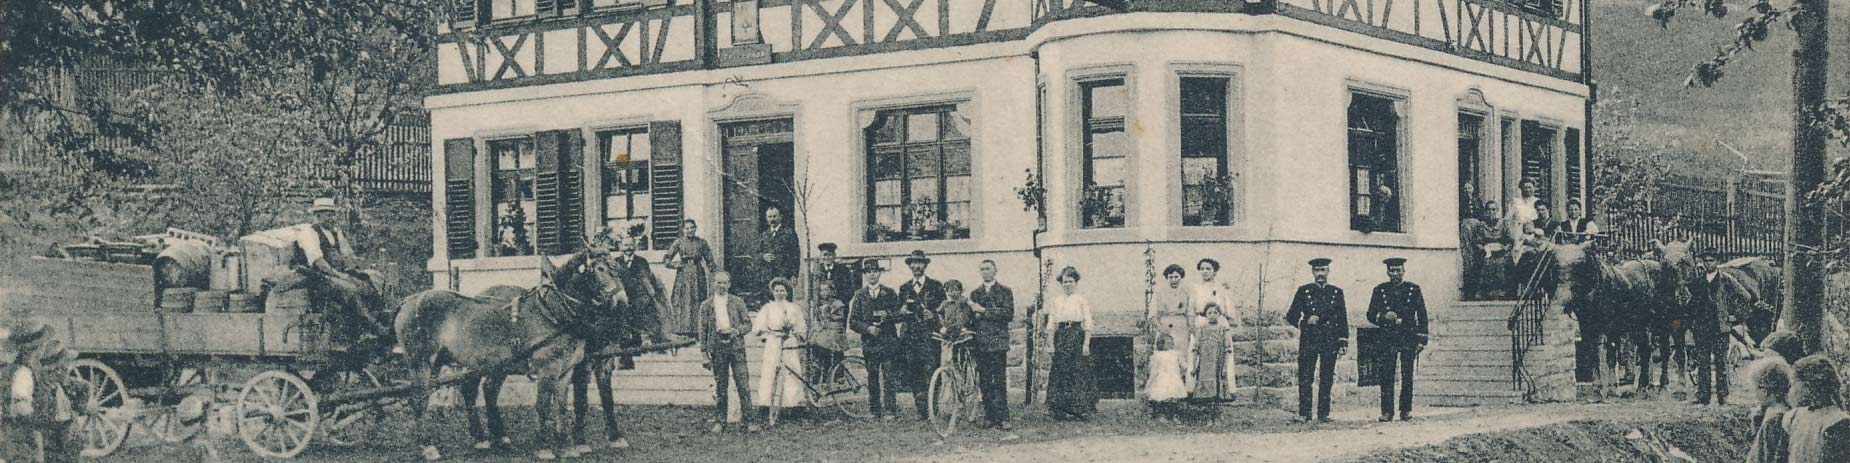 Historische Abbildung Gasthaus Rössle in Orendelsall mit Pferdegespann und Personen davor